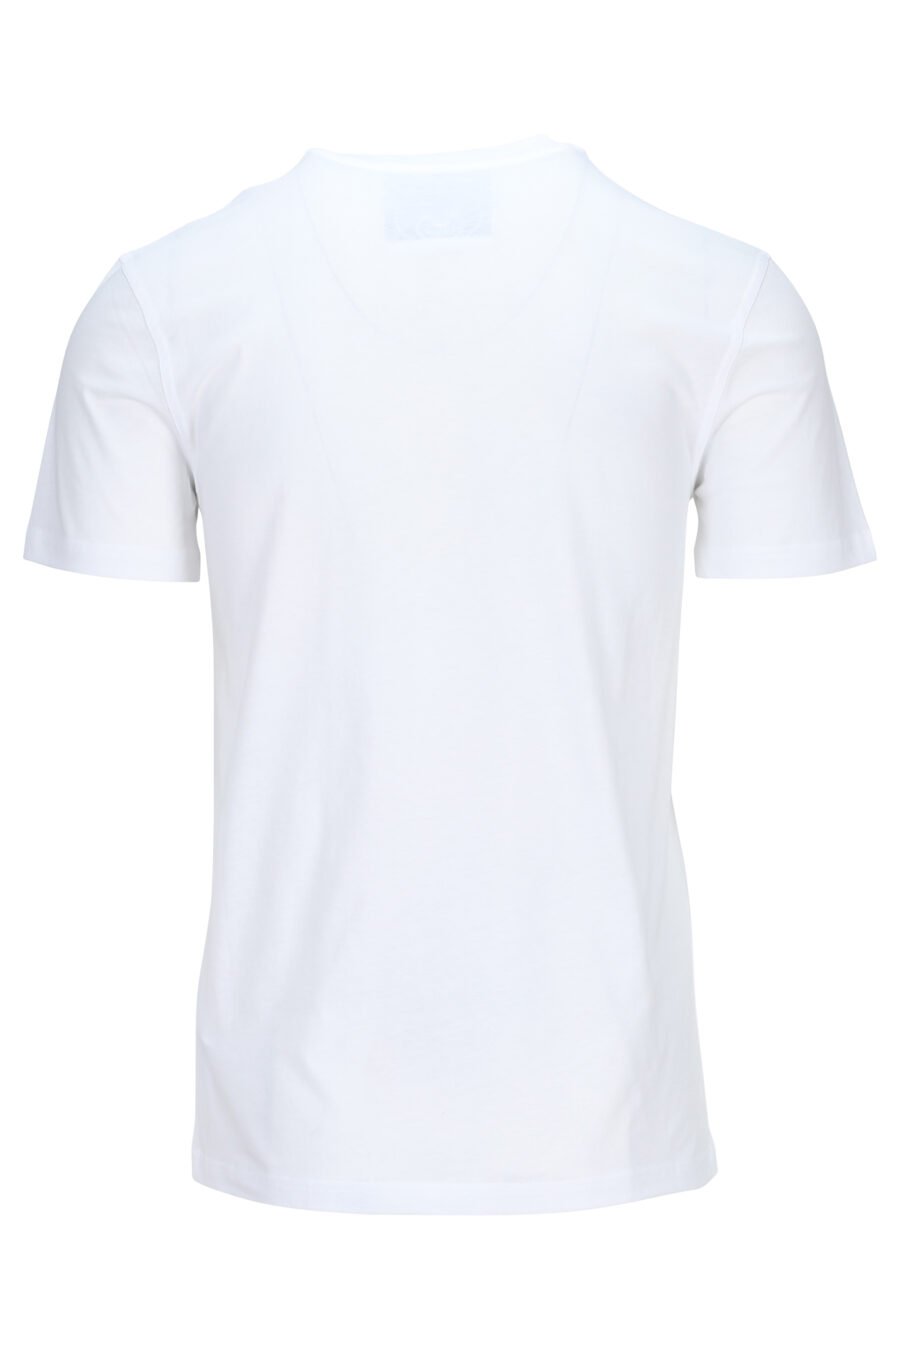 Weißes T-Shirt aus Öko-Baumwolle mit schwarzem Mini-Logo "teddy" - 889316853131 1